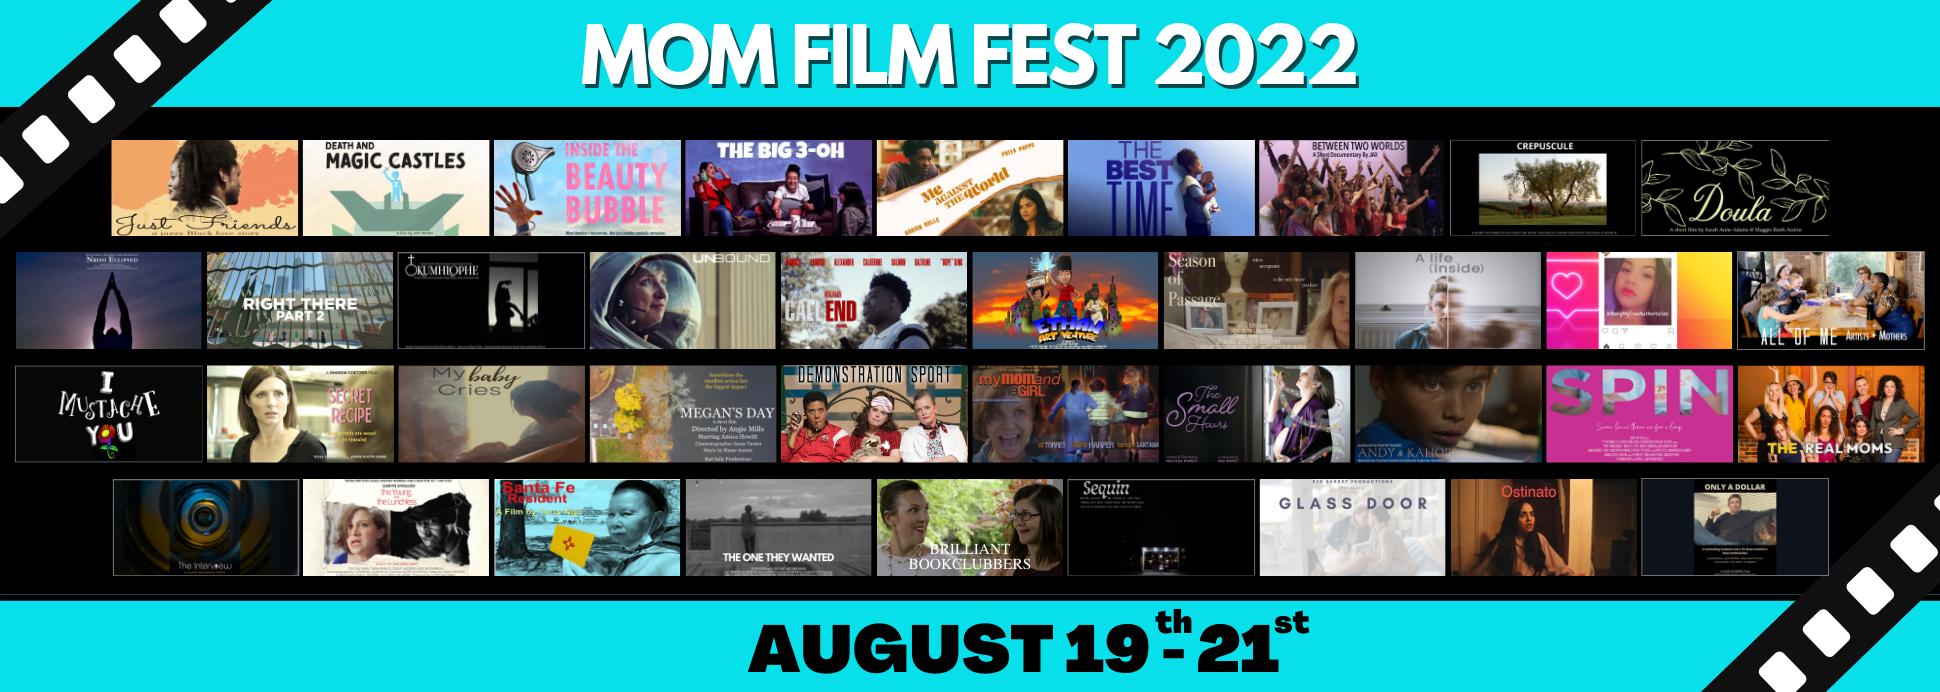 MOM Film Fest 2022